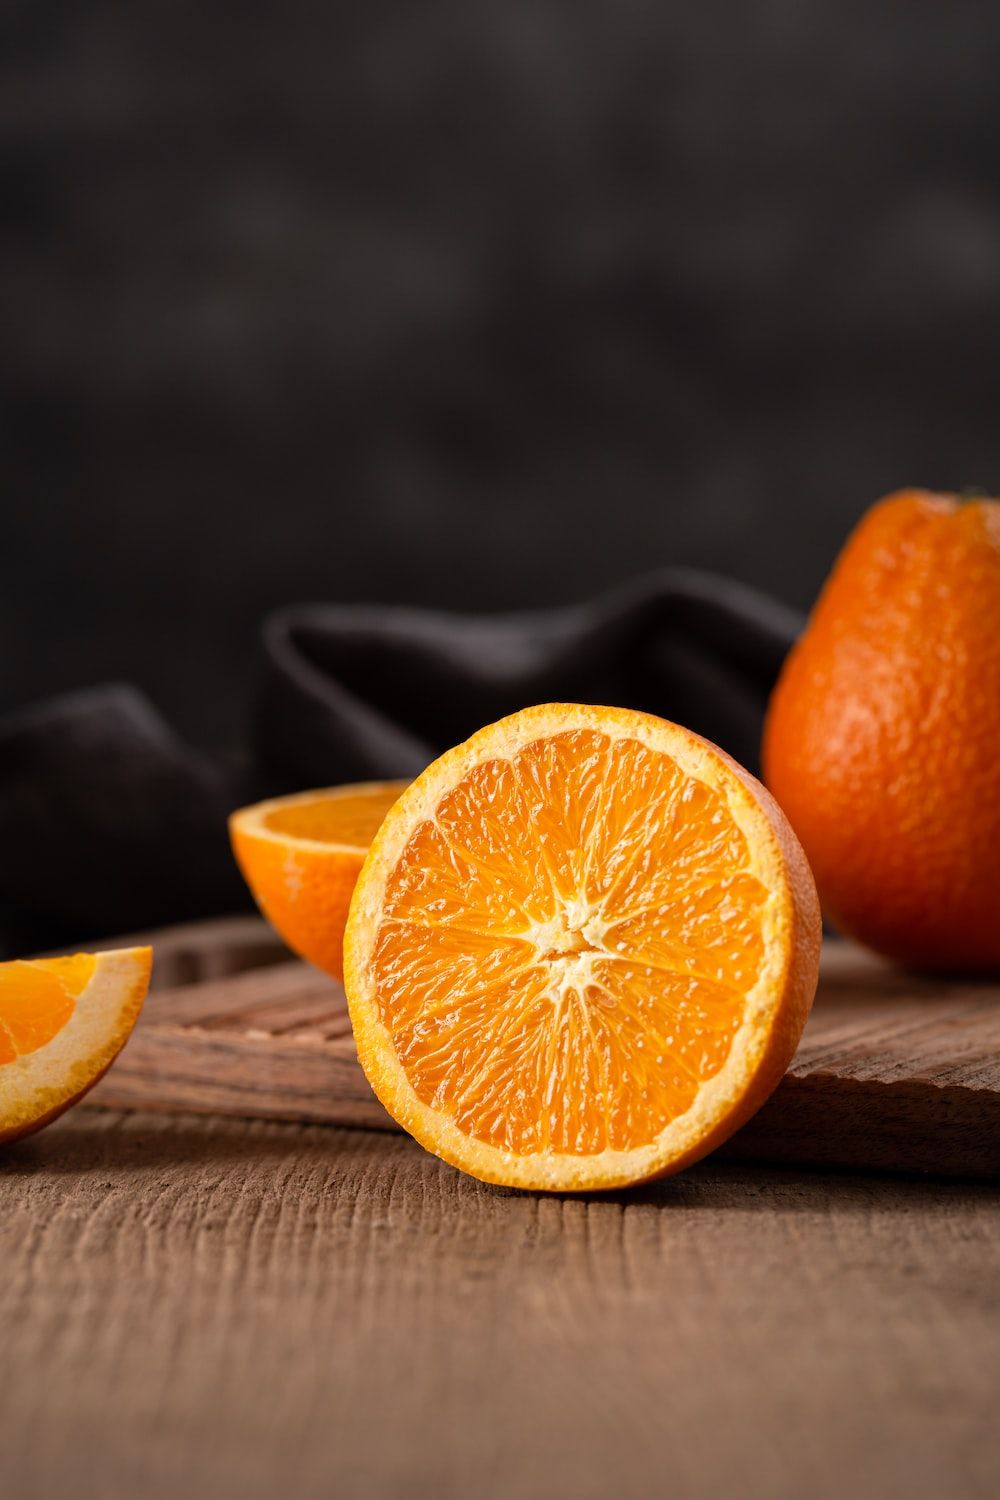 A sliced orange on a wooden table. - Pastel orange